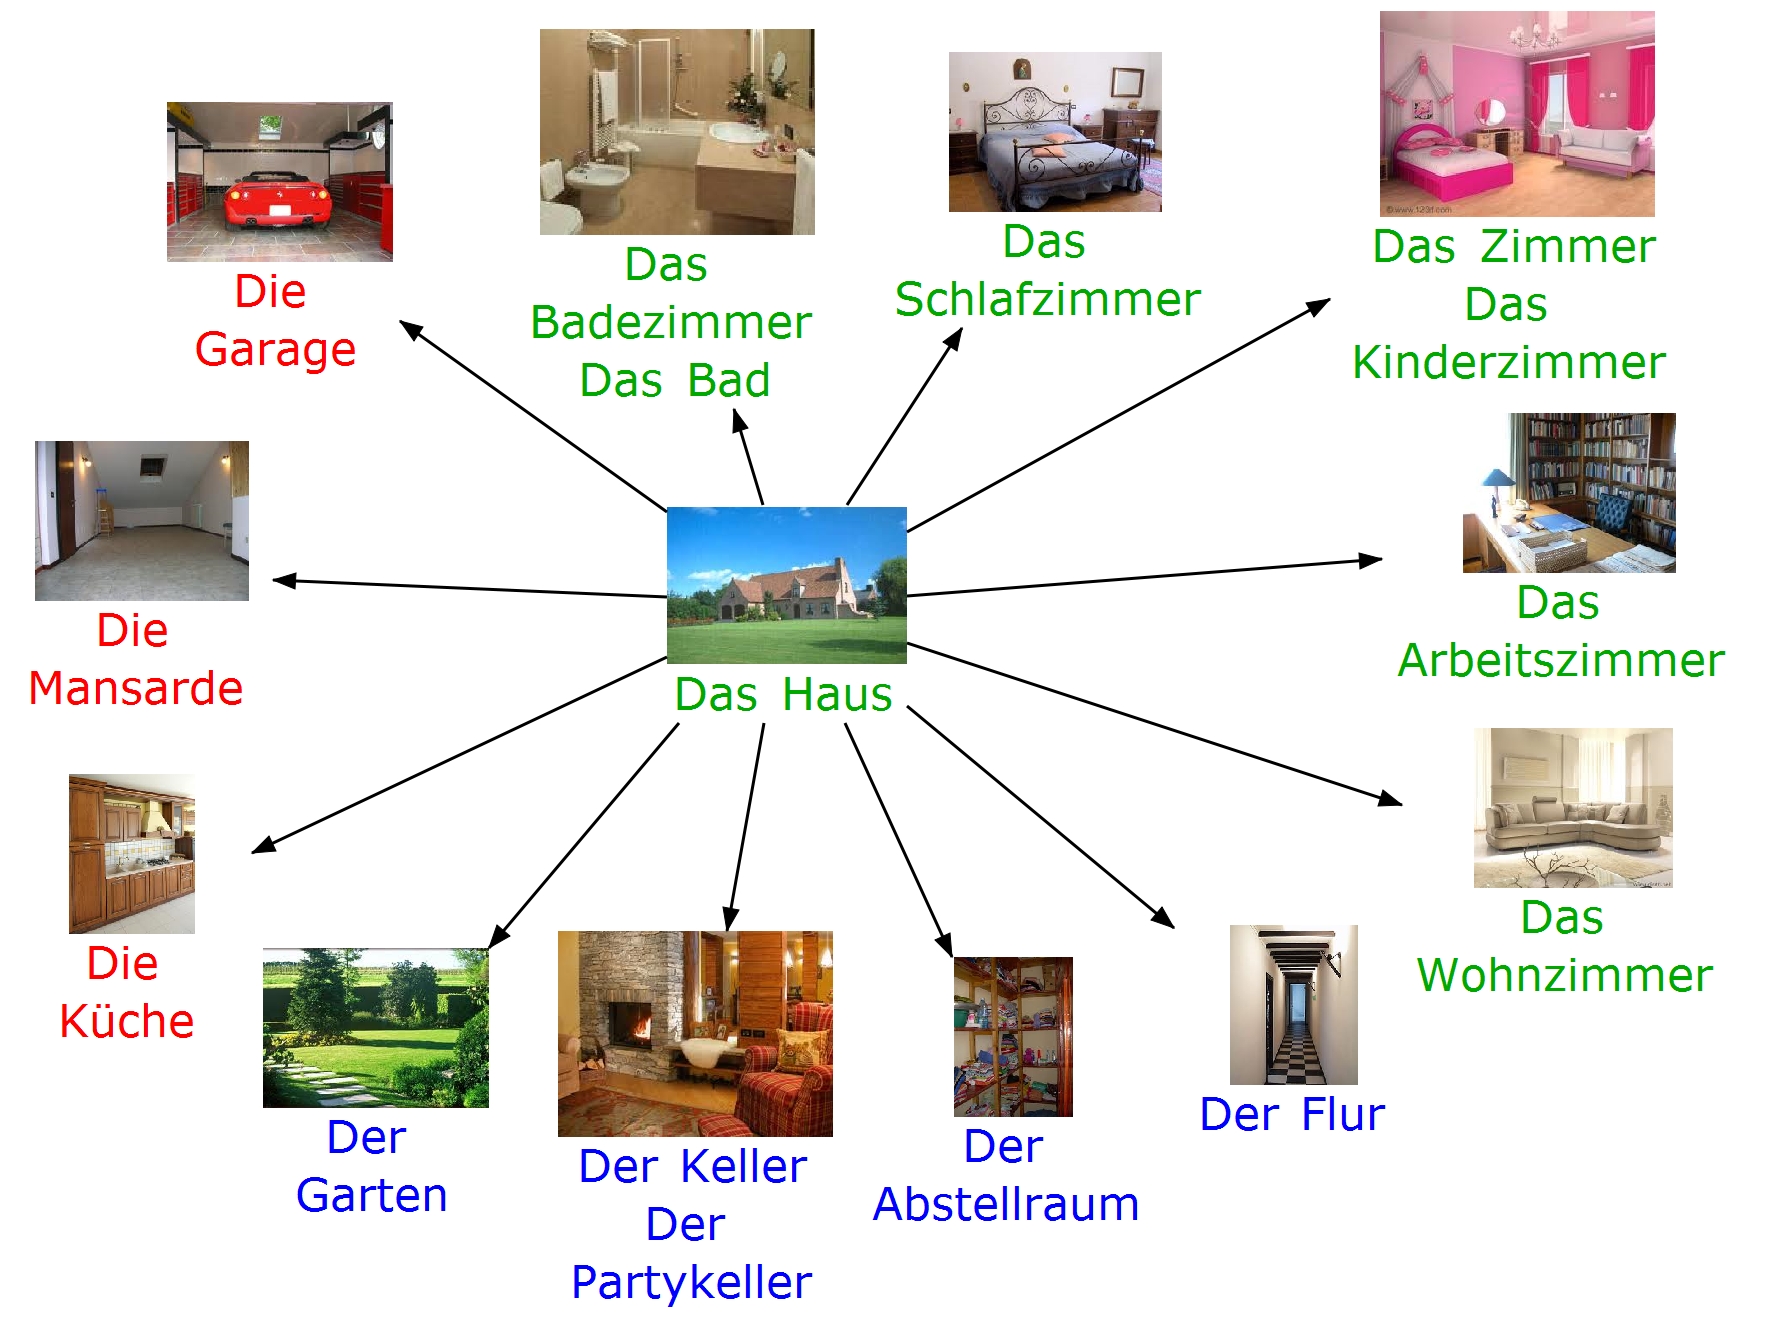 Описание комнаты по немецки